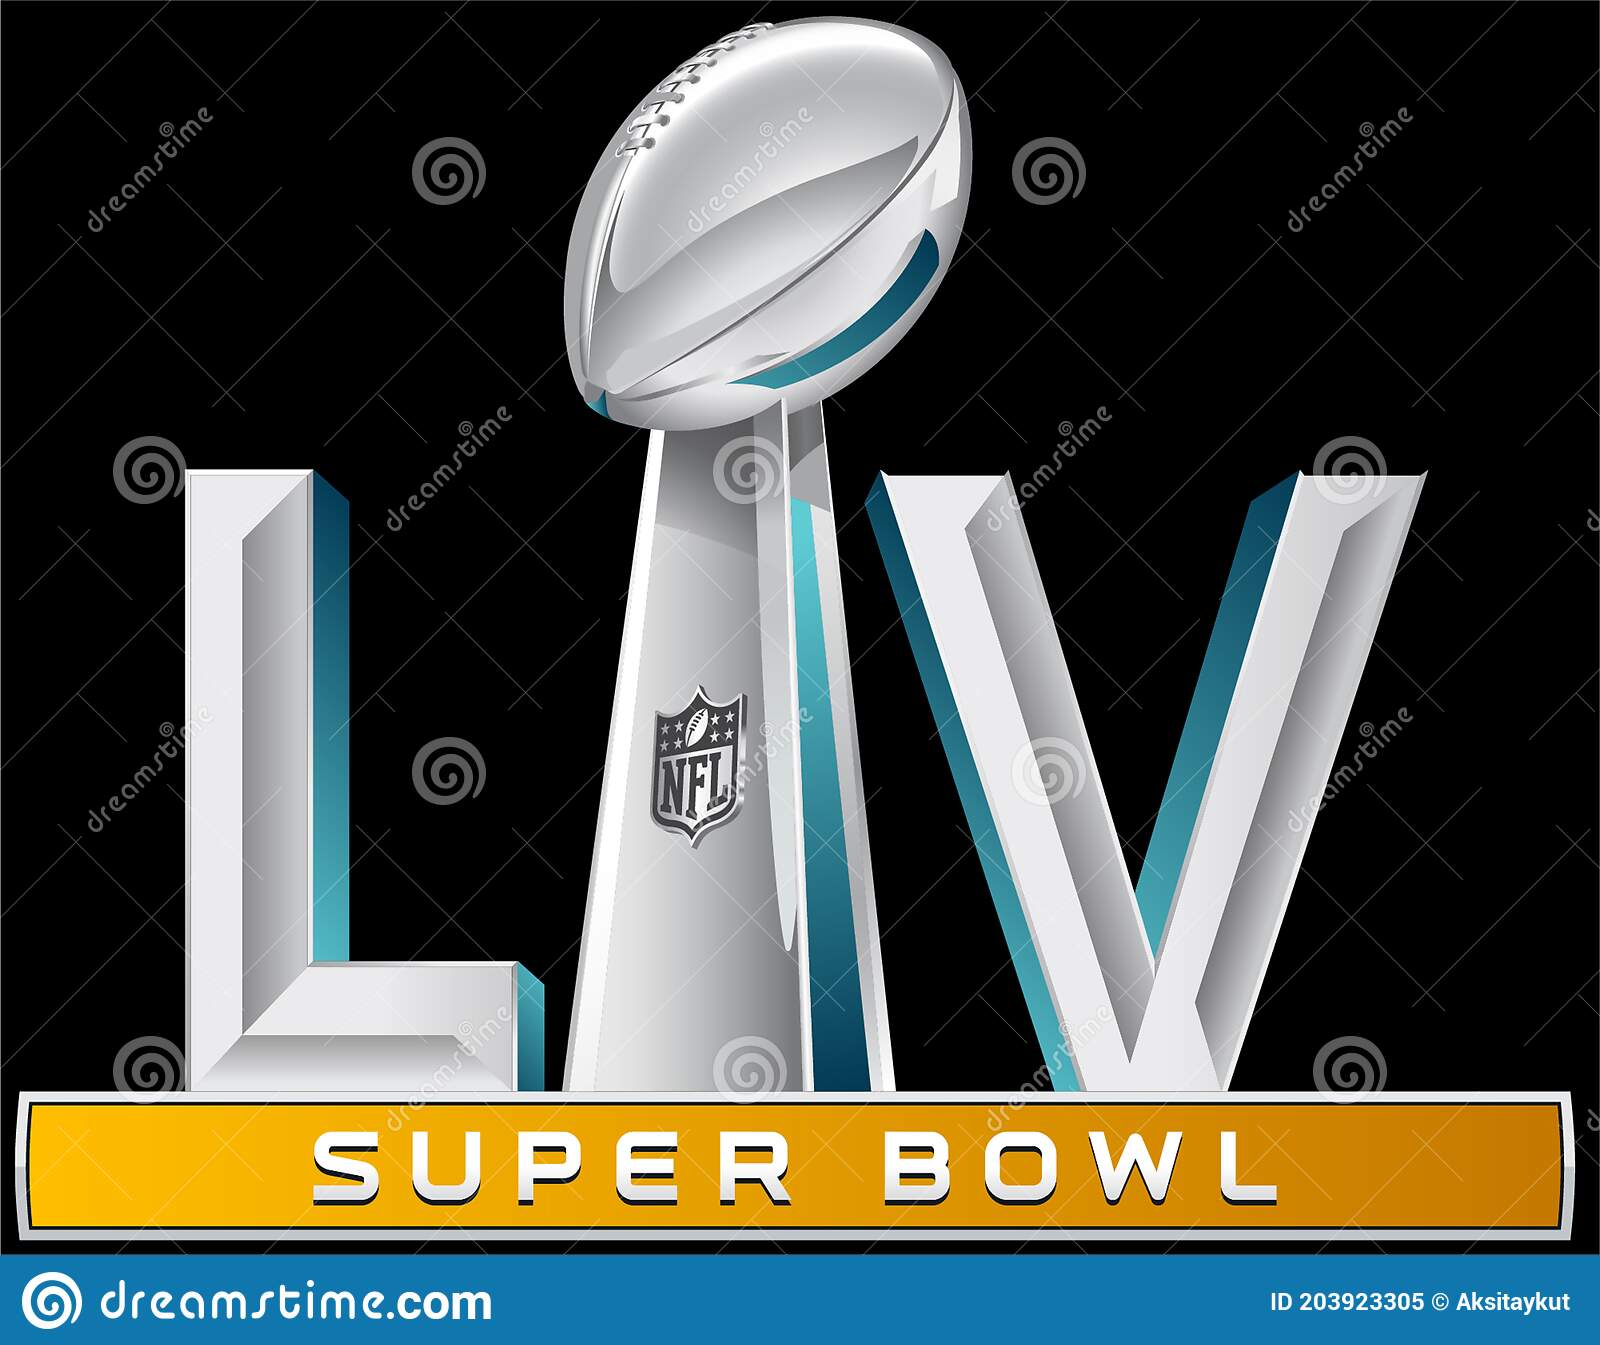 Super Bowl 55 Clipart